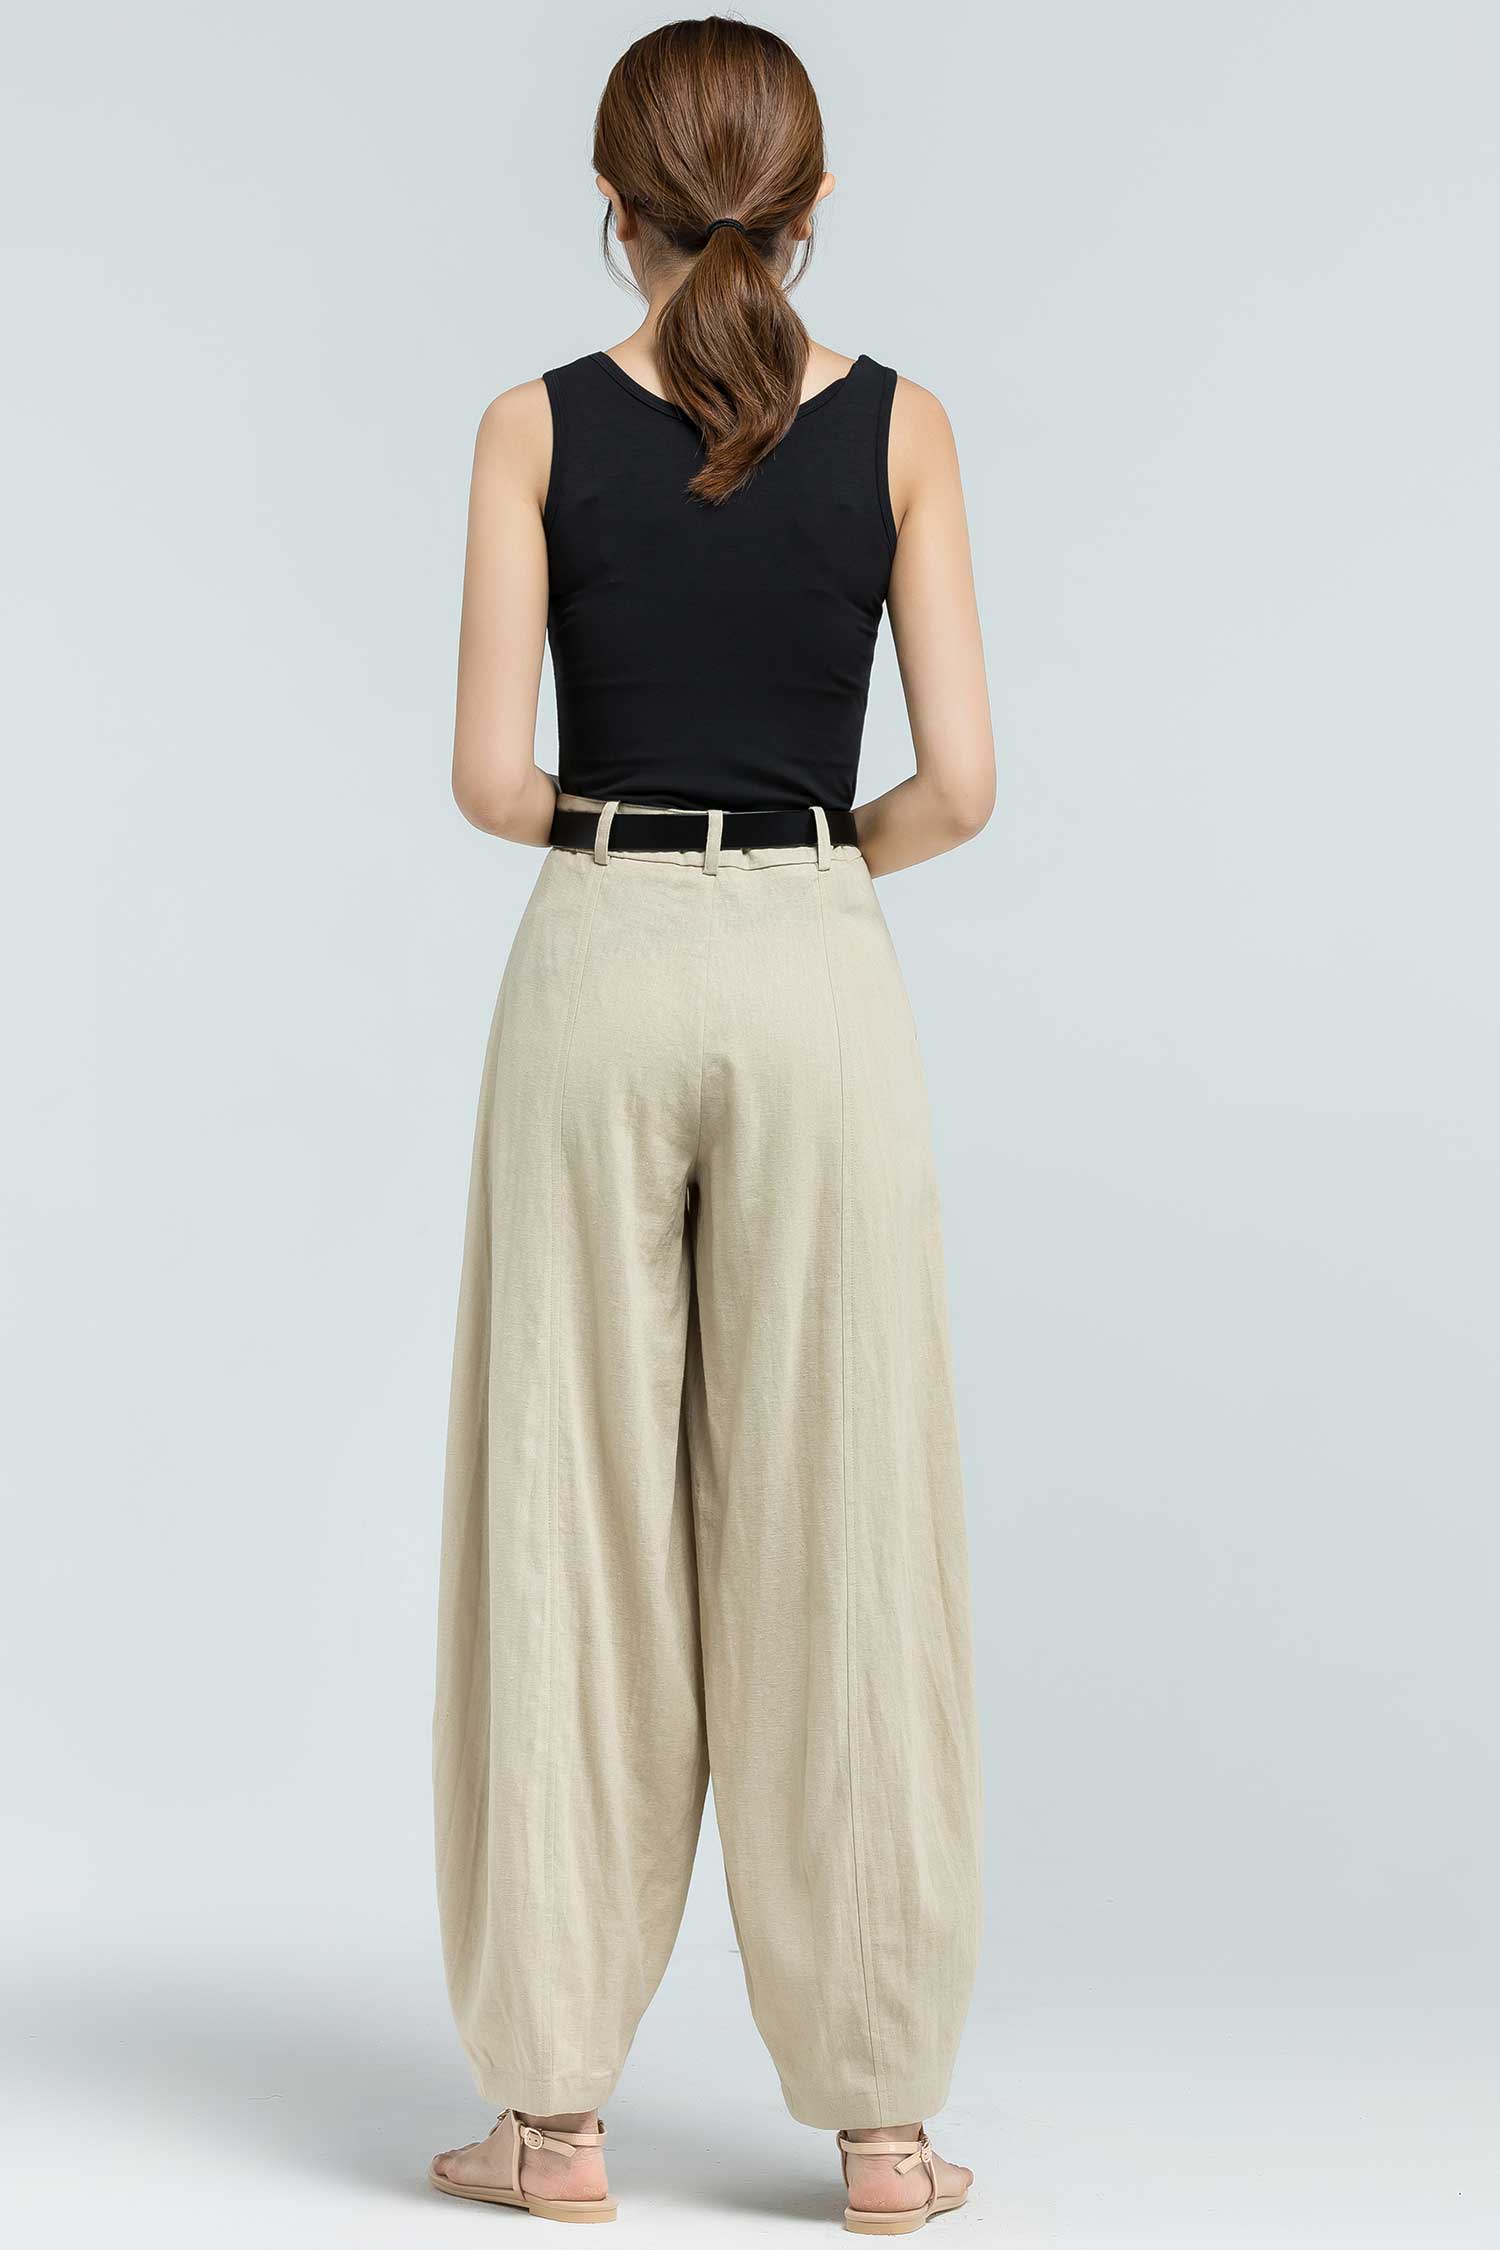 Linen pants women, high waisted pants, wide leg pants XS-US2 2380